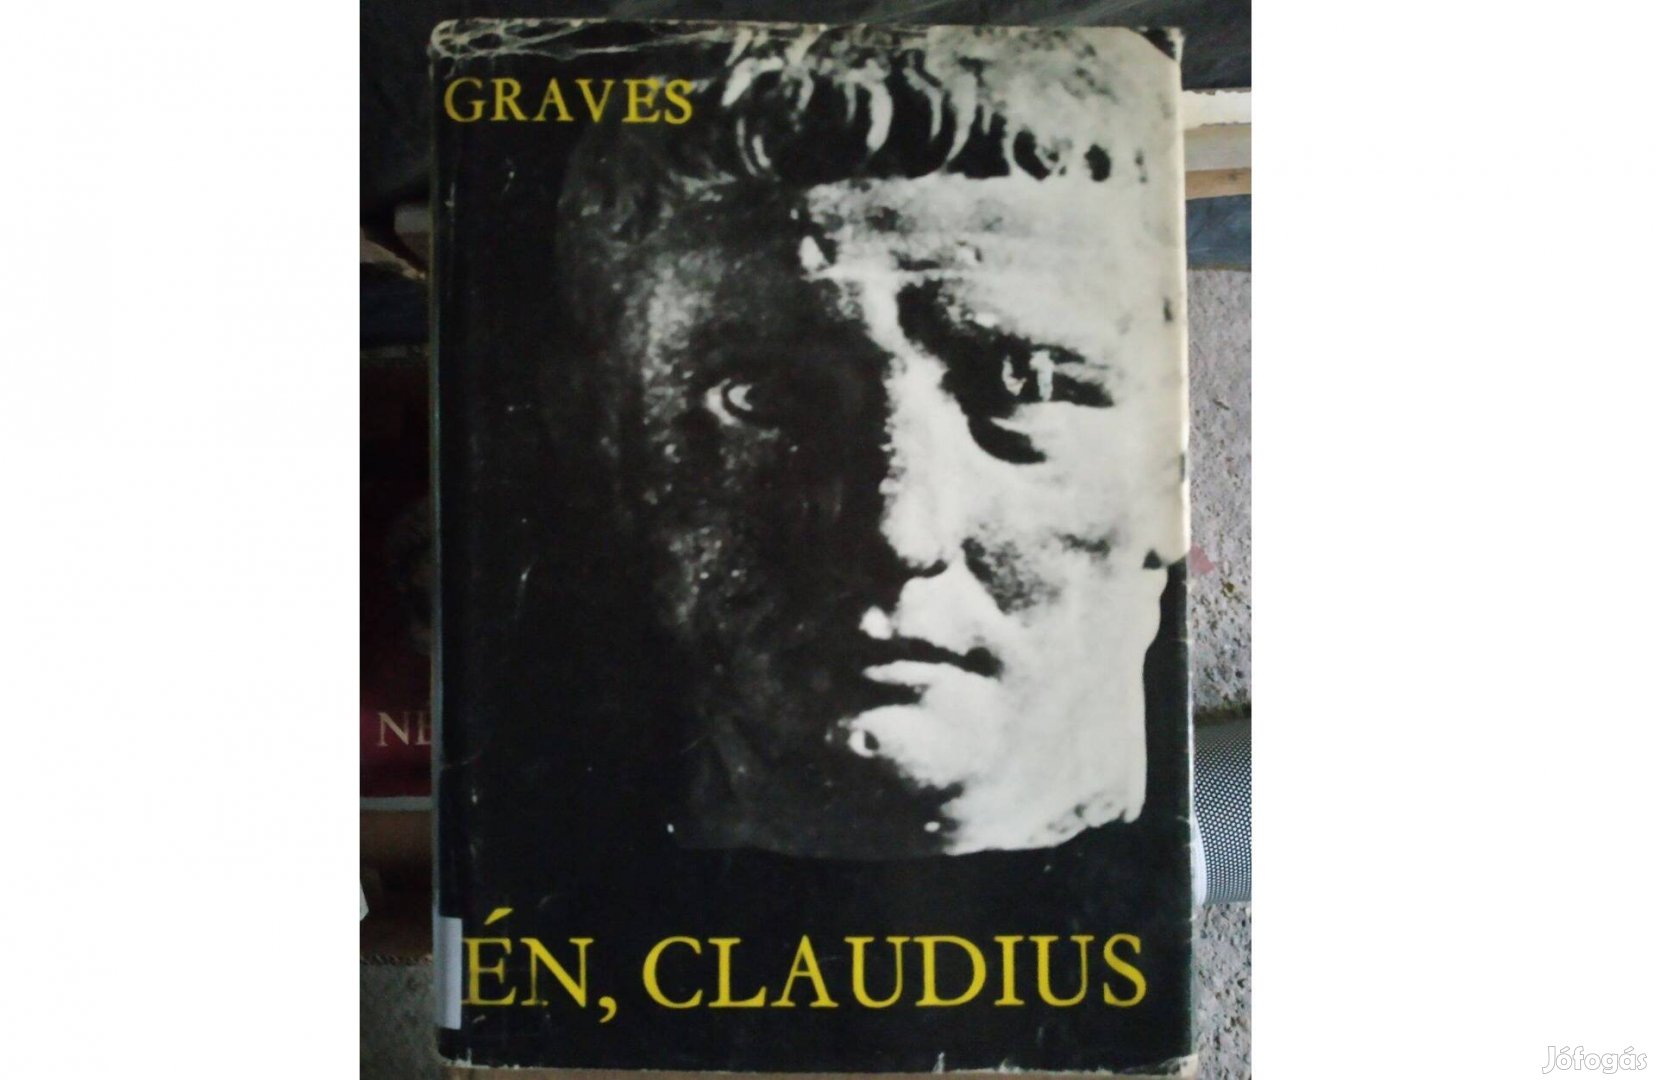 Én, Claudius - Robert Graves könyve. Én Tiberius Claudius Germanicus